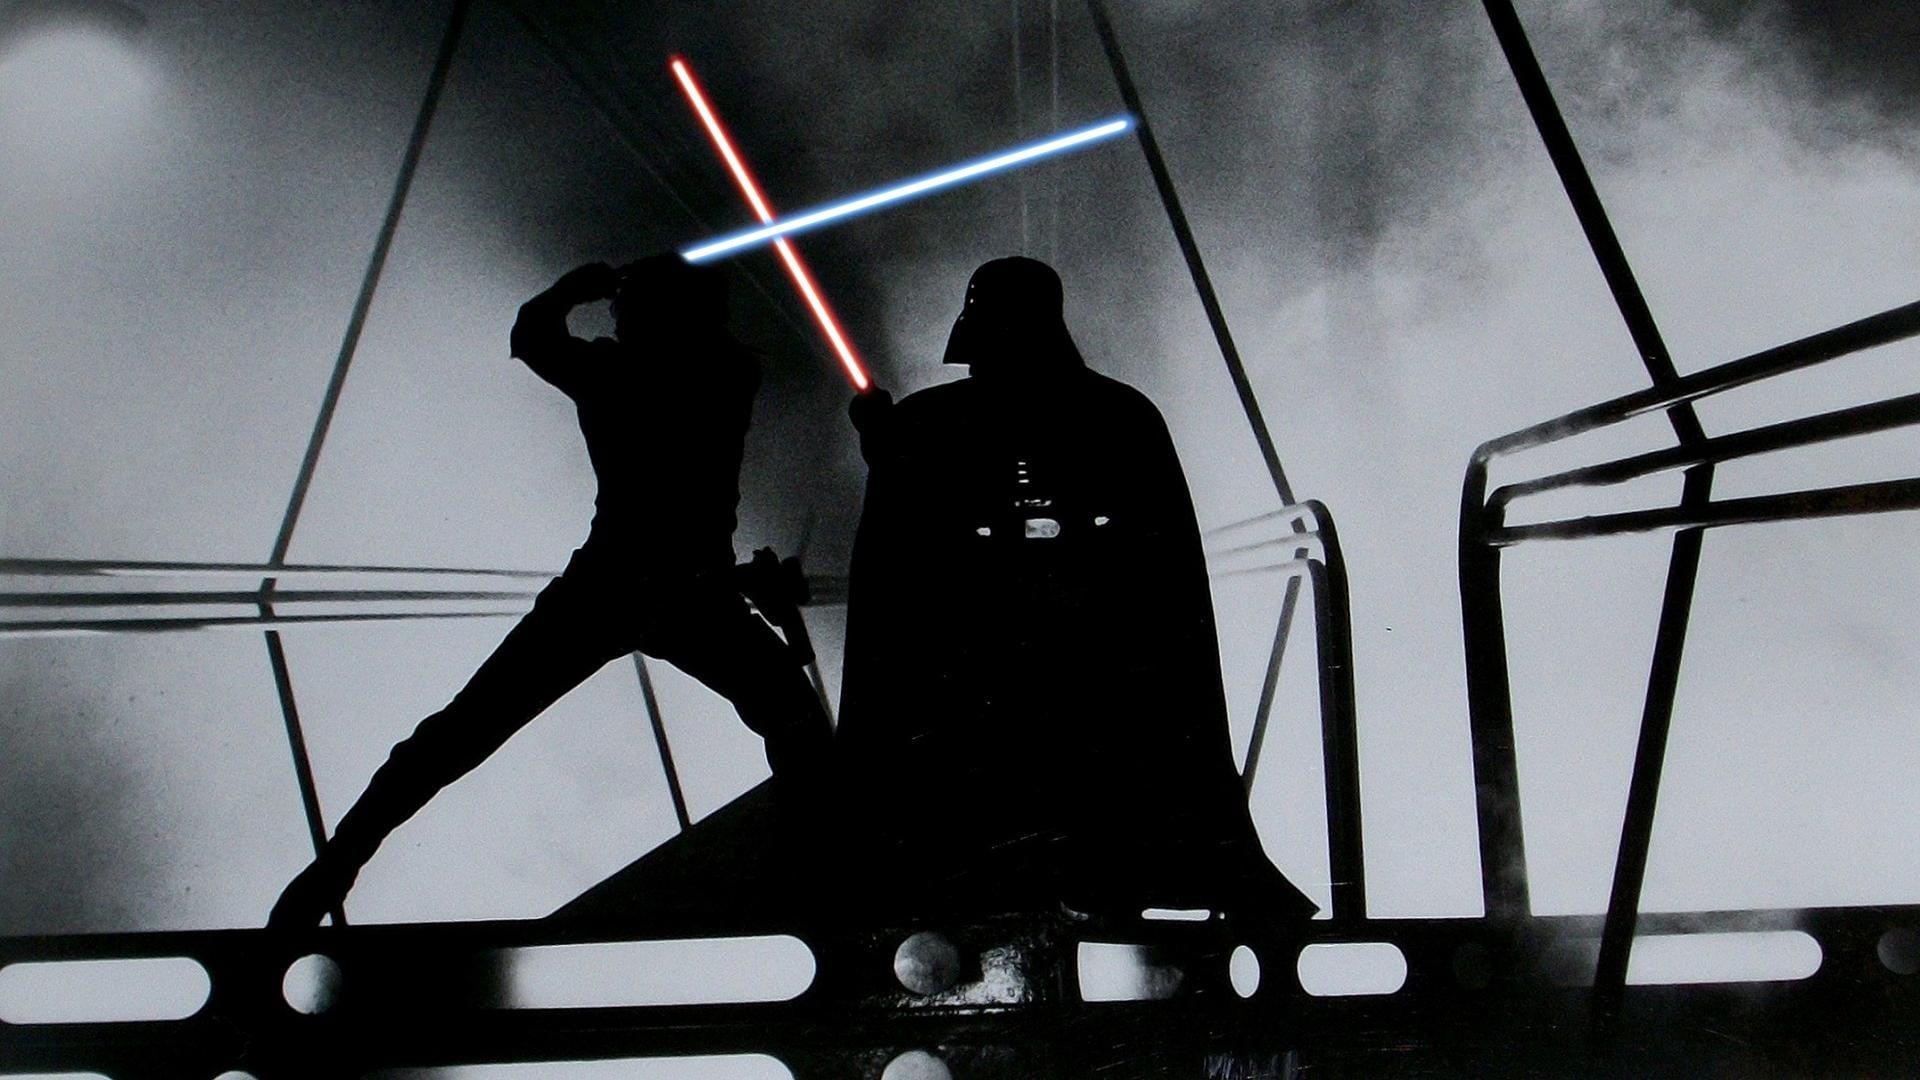 Silhouette of Star Wars Darth Vader illustration, Star Wars, lightsaber, Darth Vader, Luke Skywalker HD wallpaper